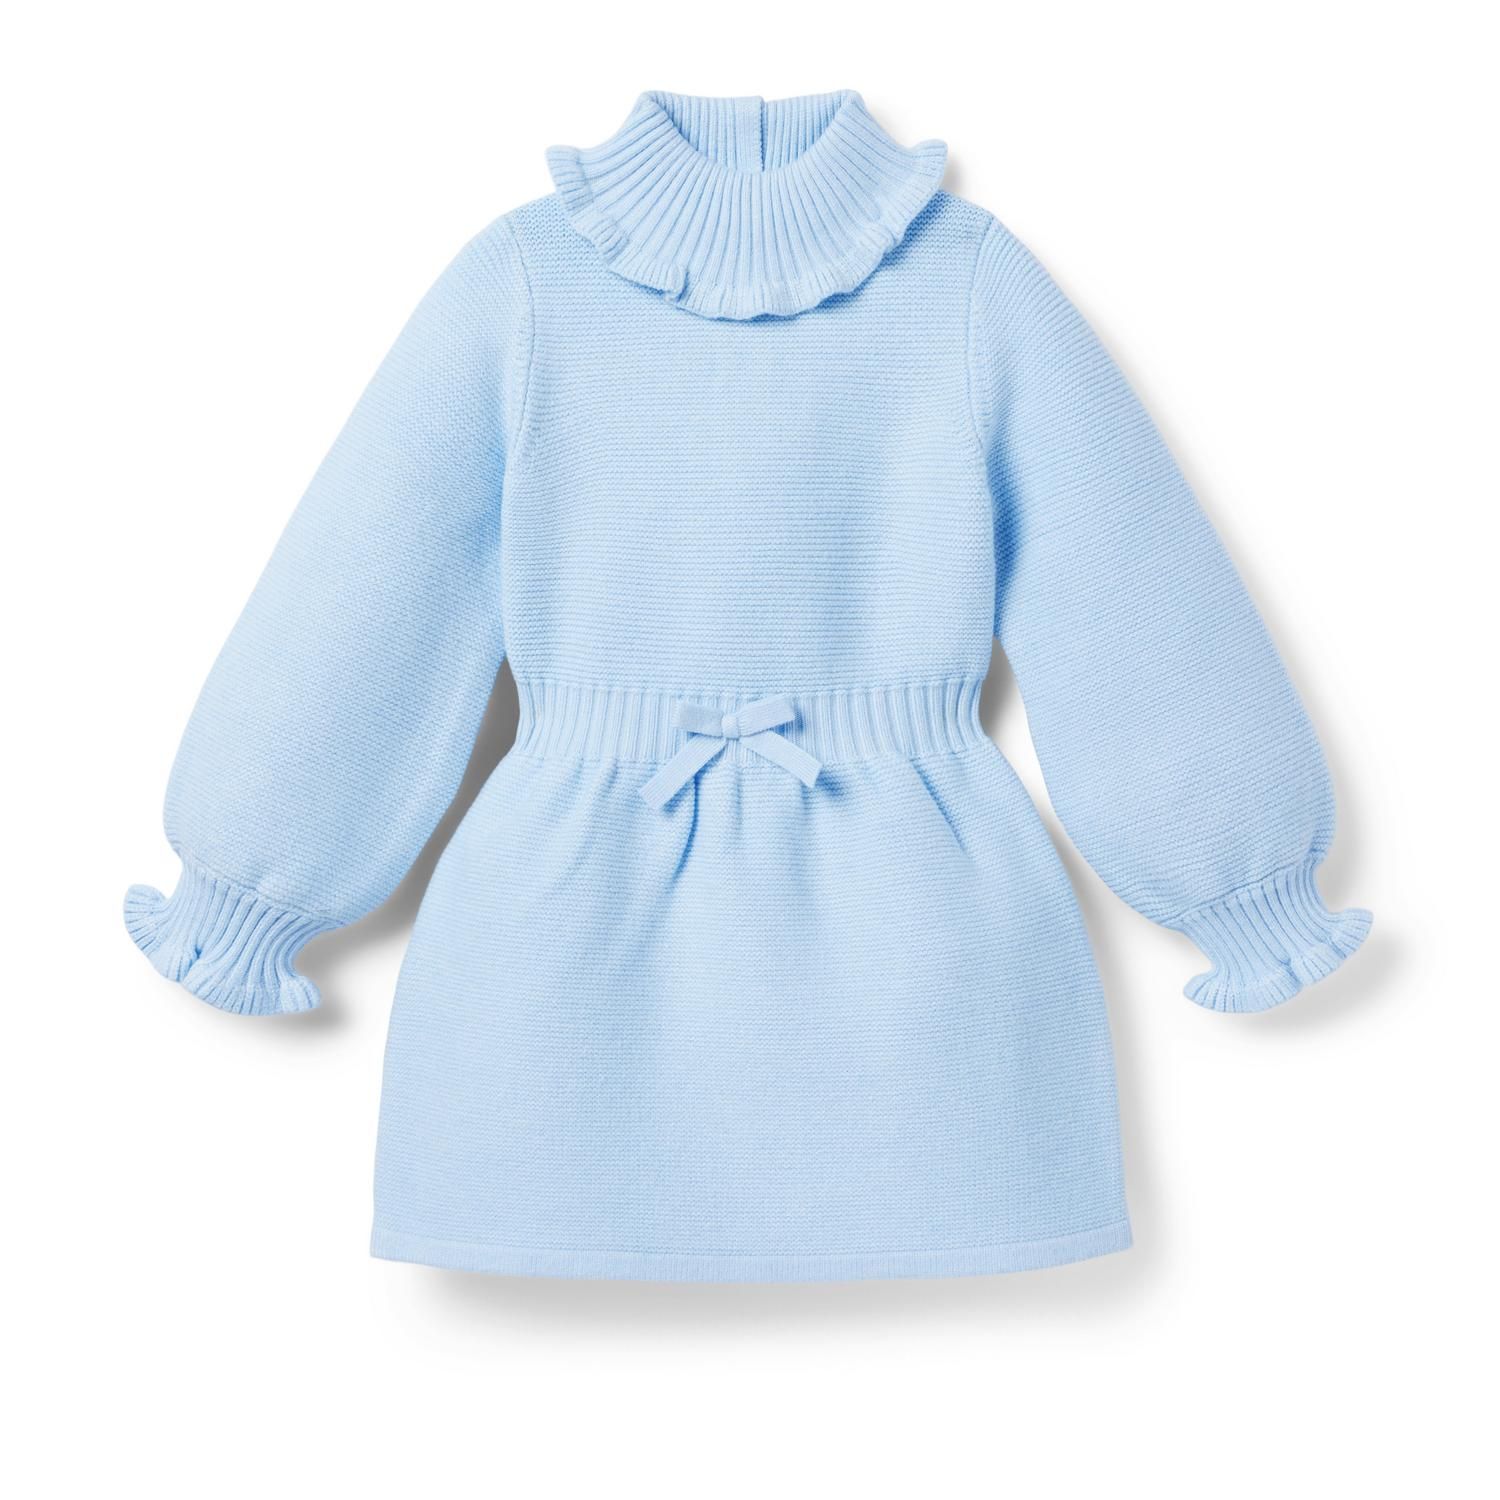 The Cozy Joy Sweater Dress | Janie and Jack